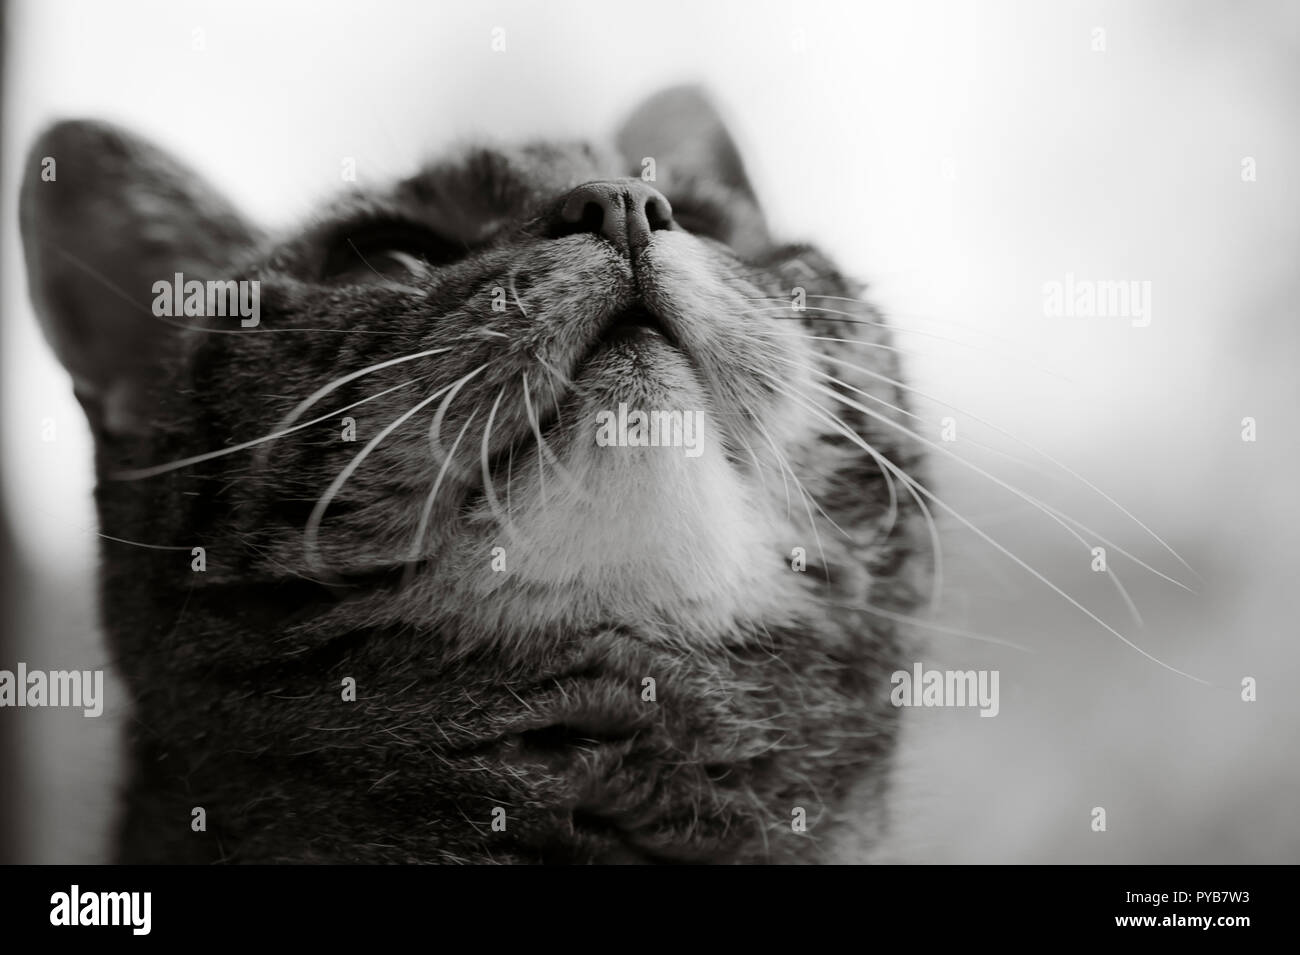 Image en noir et blanc de la face d'un chat de dessous c'est chin Banque D'Images